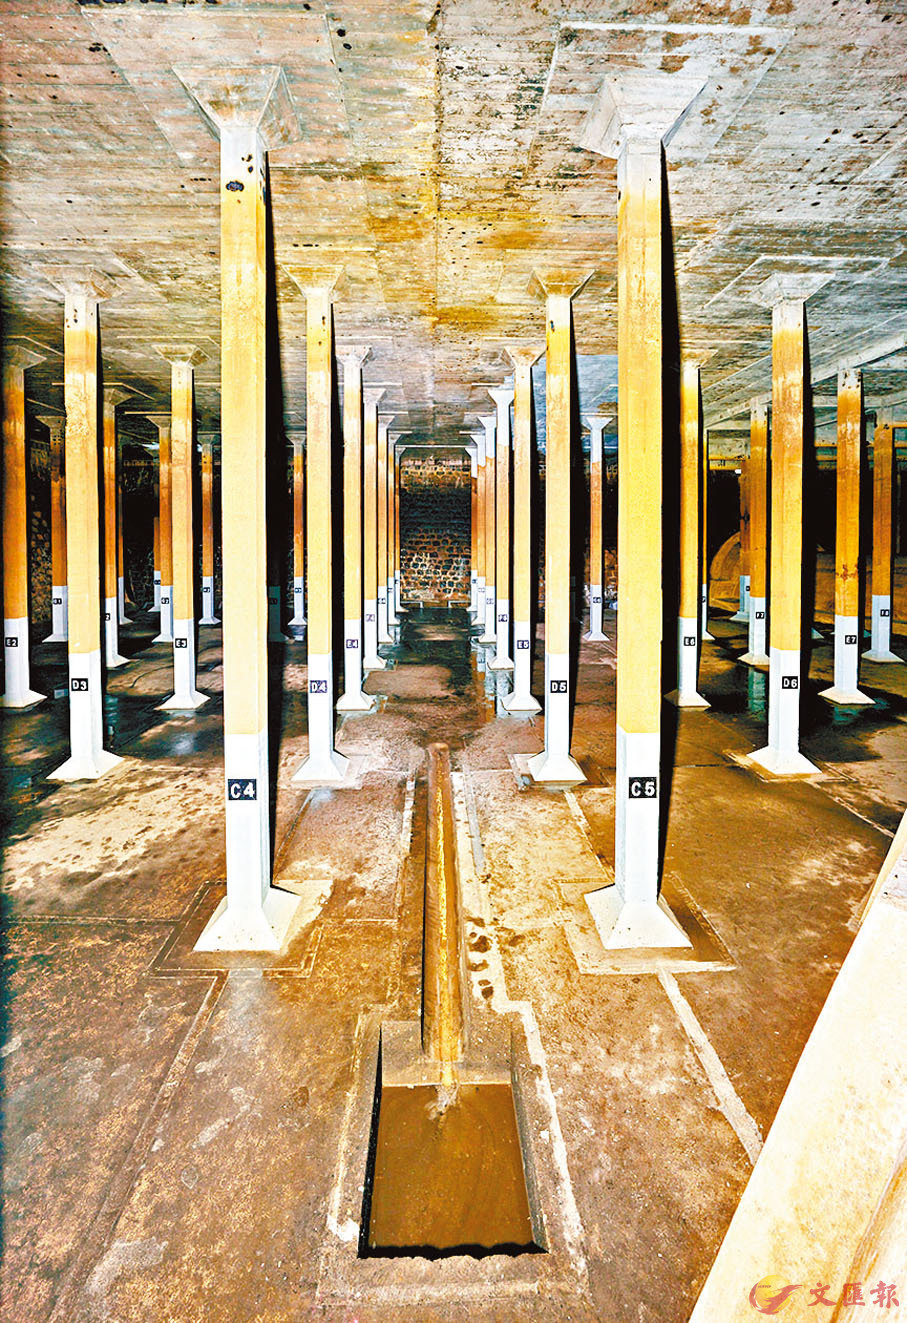 ●半山雅賓利食水配水庫於1888年至1889年期間落成，即至今有近133年歷史。古物古蹟辦事處供圖